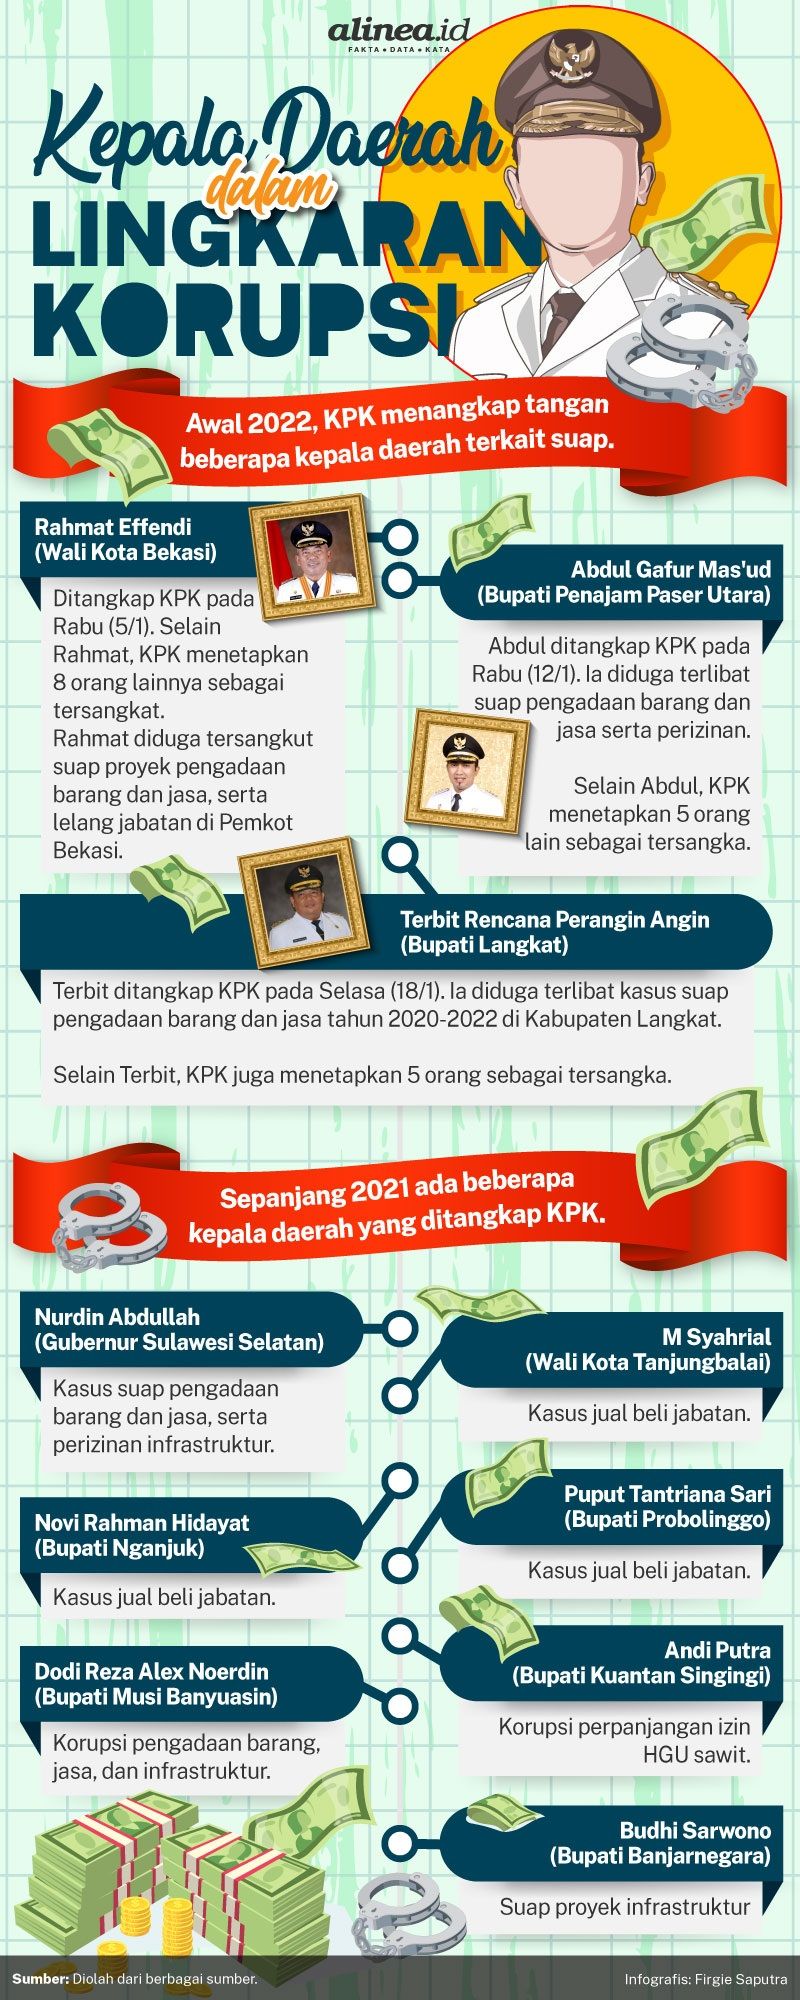 Infografik korupsi kepala daerah. Alinea.id/Firgie Saputra.